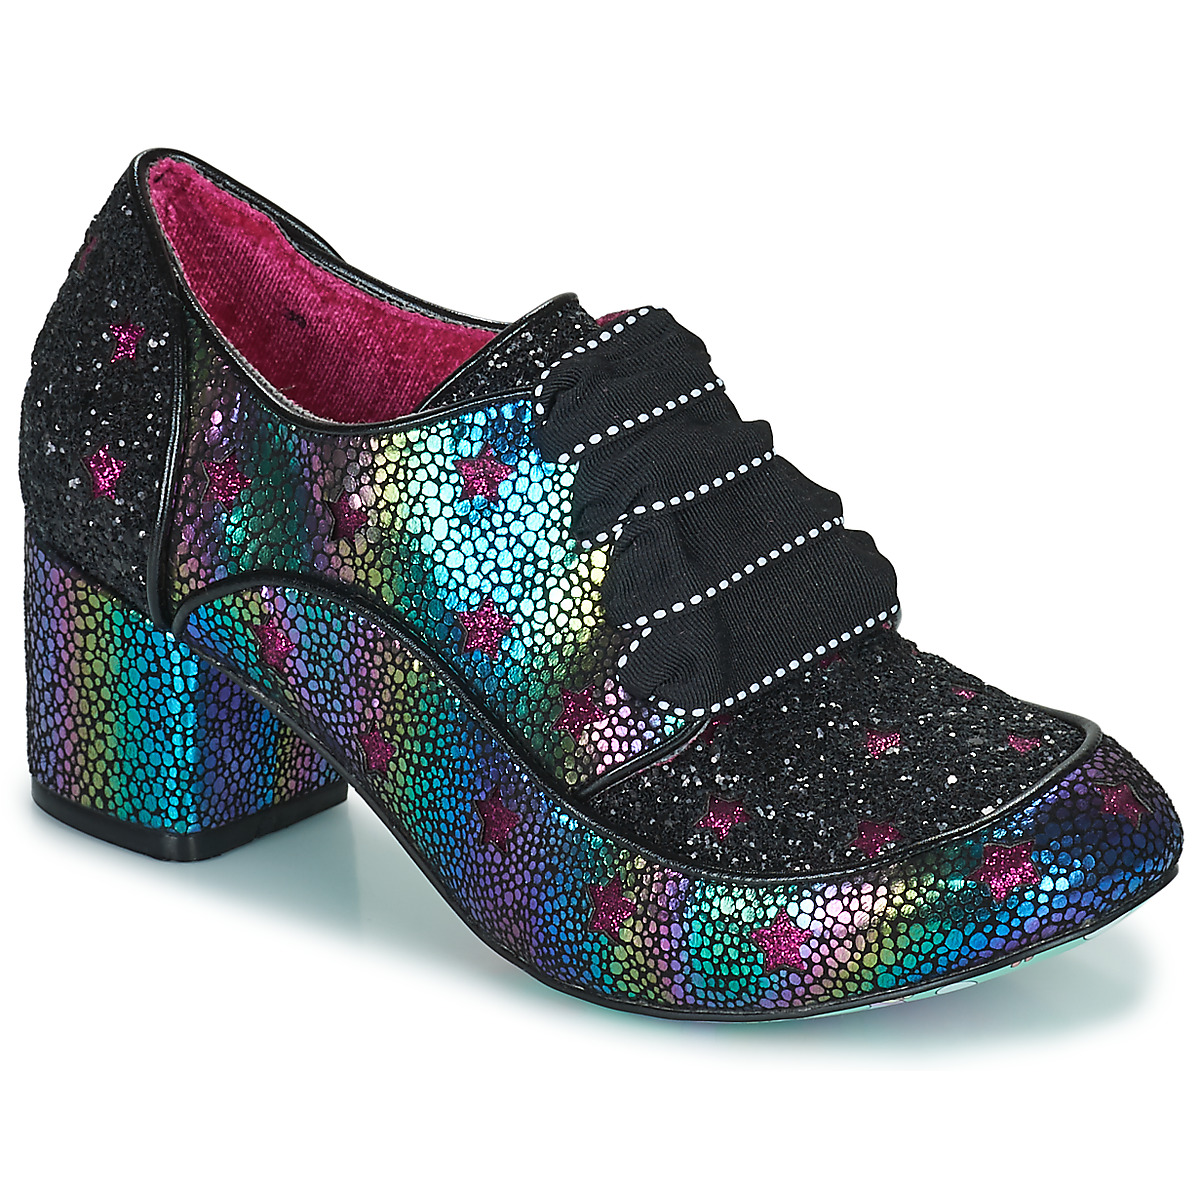 Sapatos Mulher Richelieu Irregular Choice Supernova Preto / Multicolor